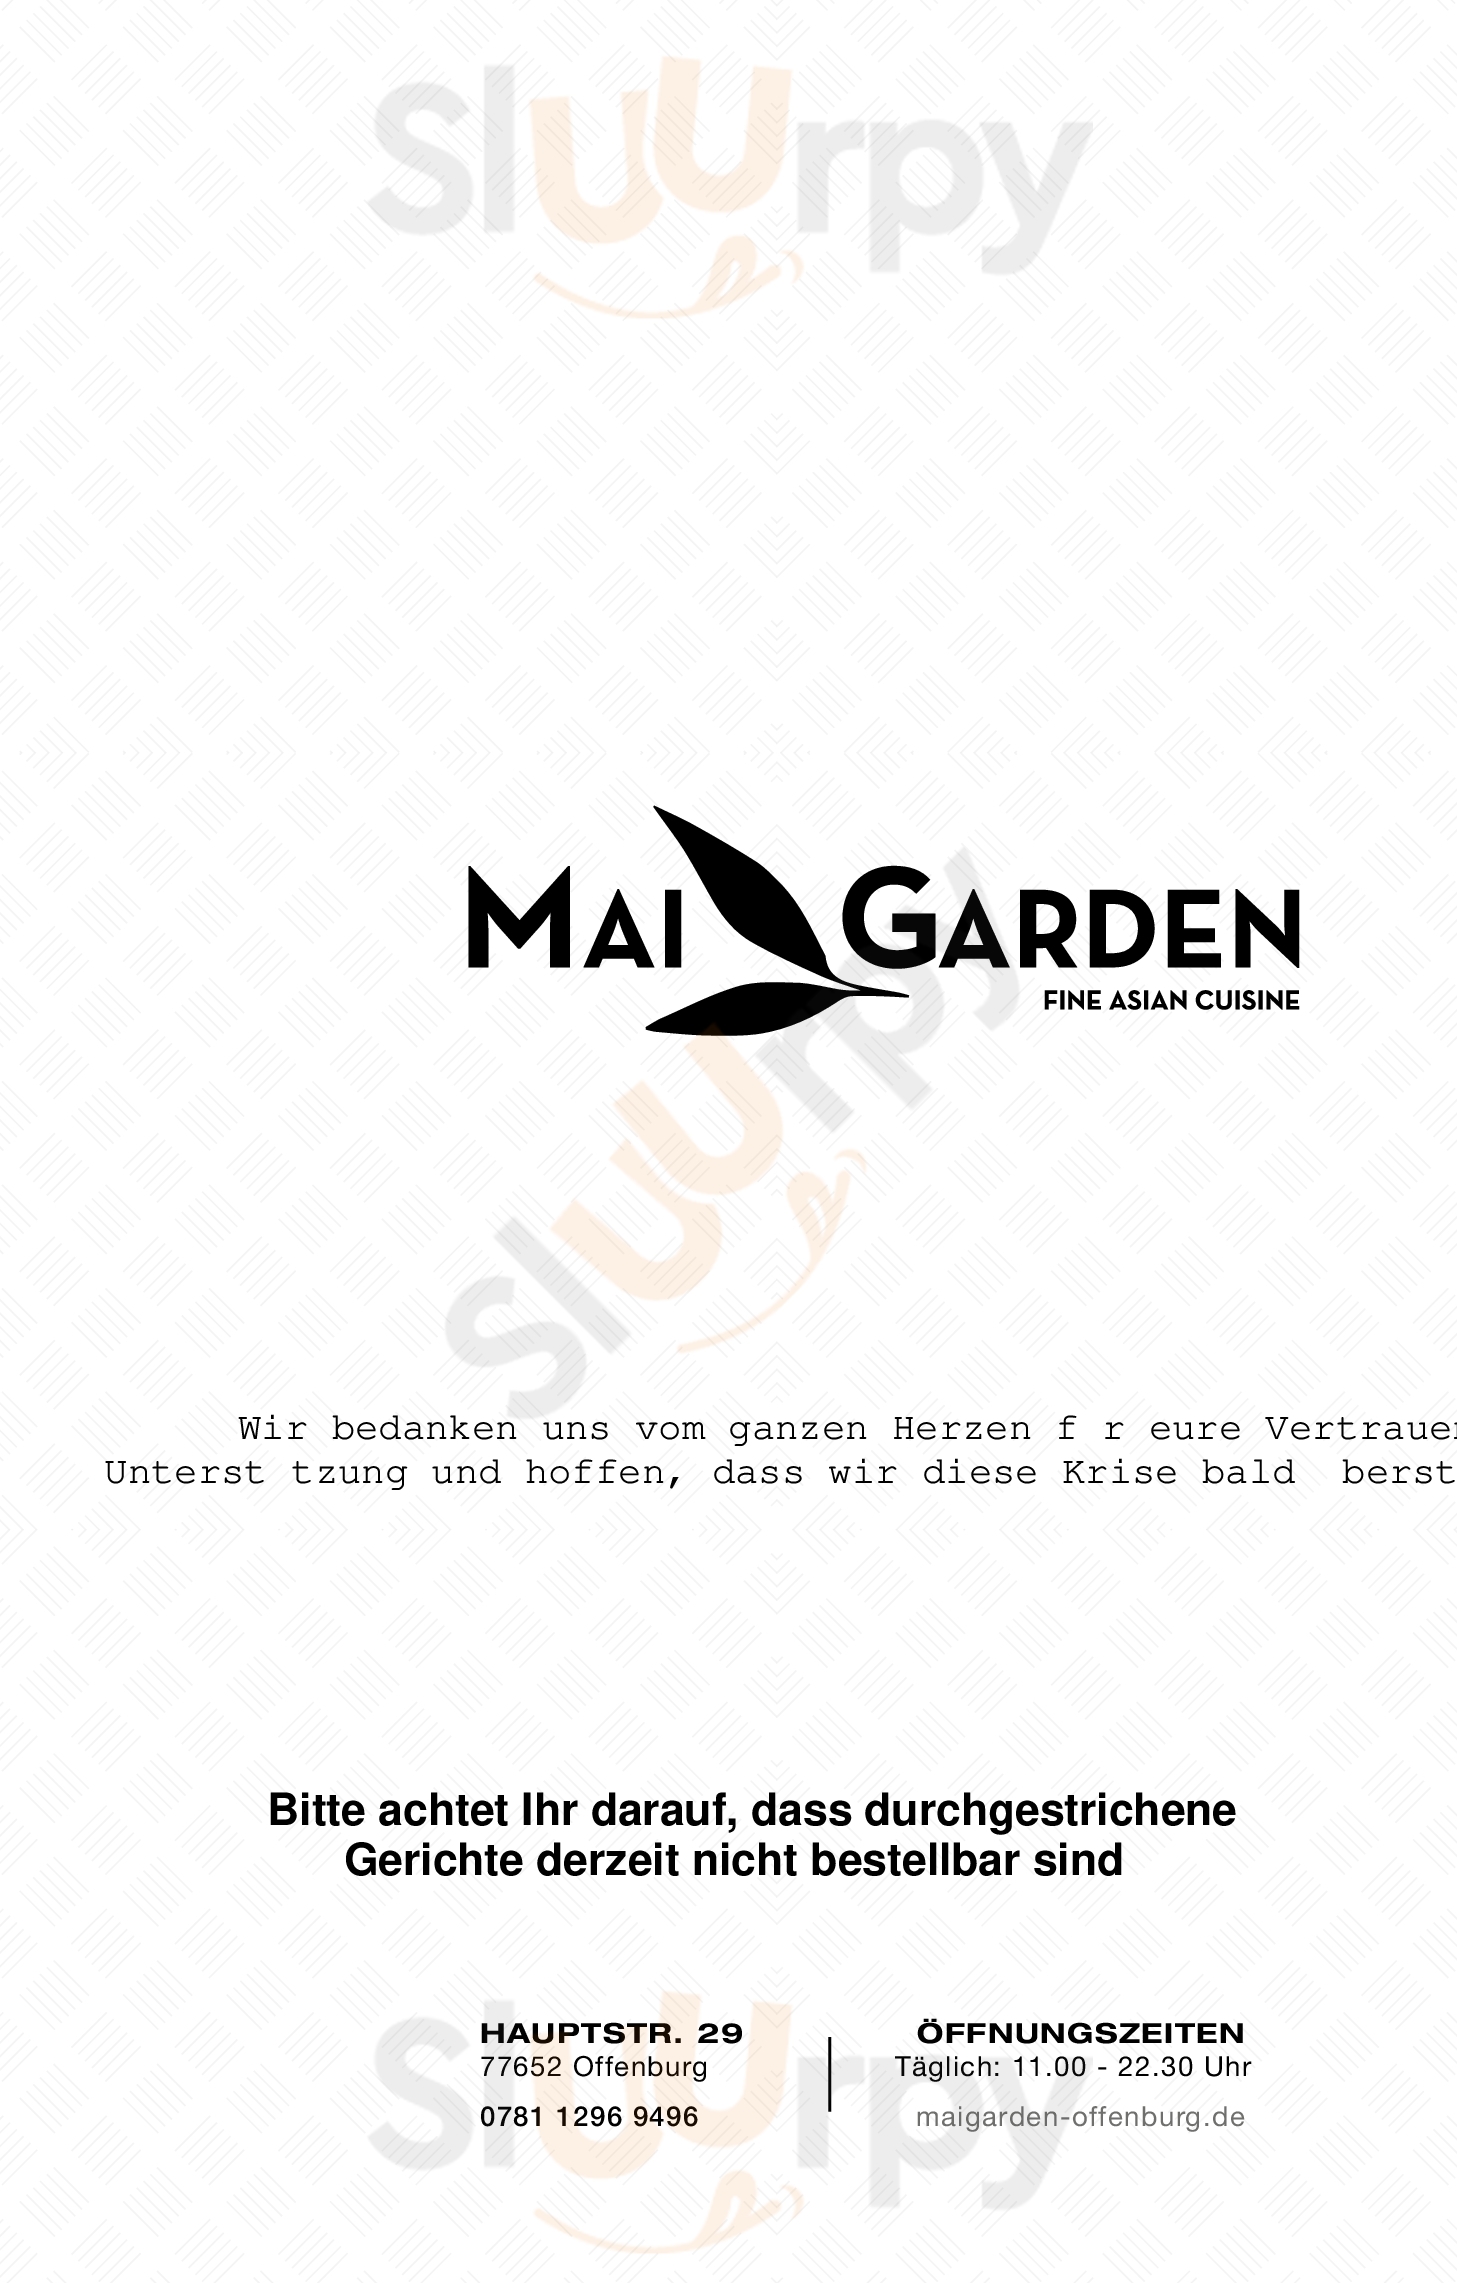 Mai Garden Restaurant Offenburg Menu - 1